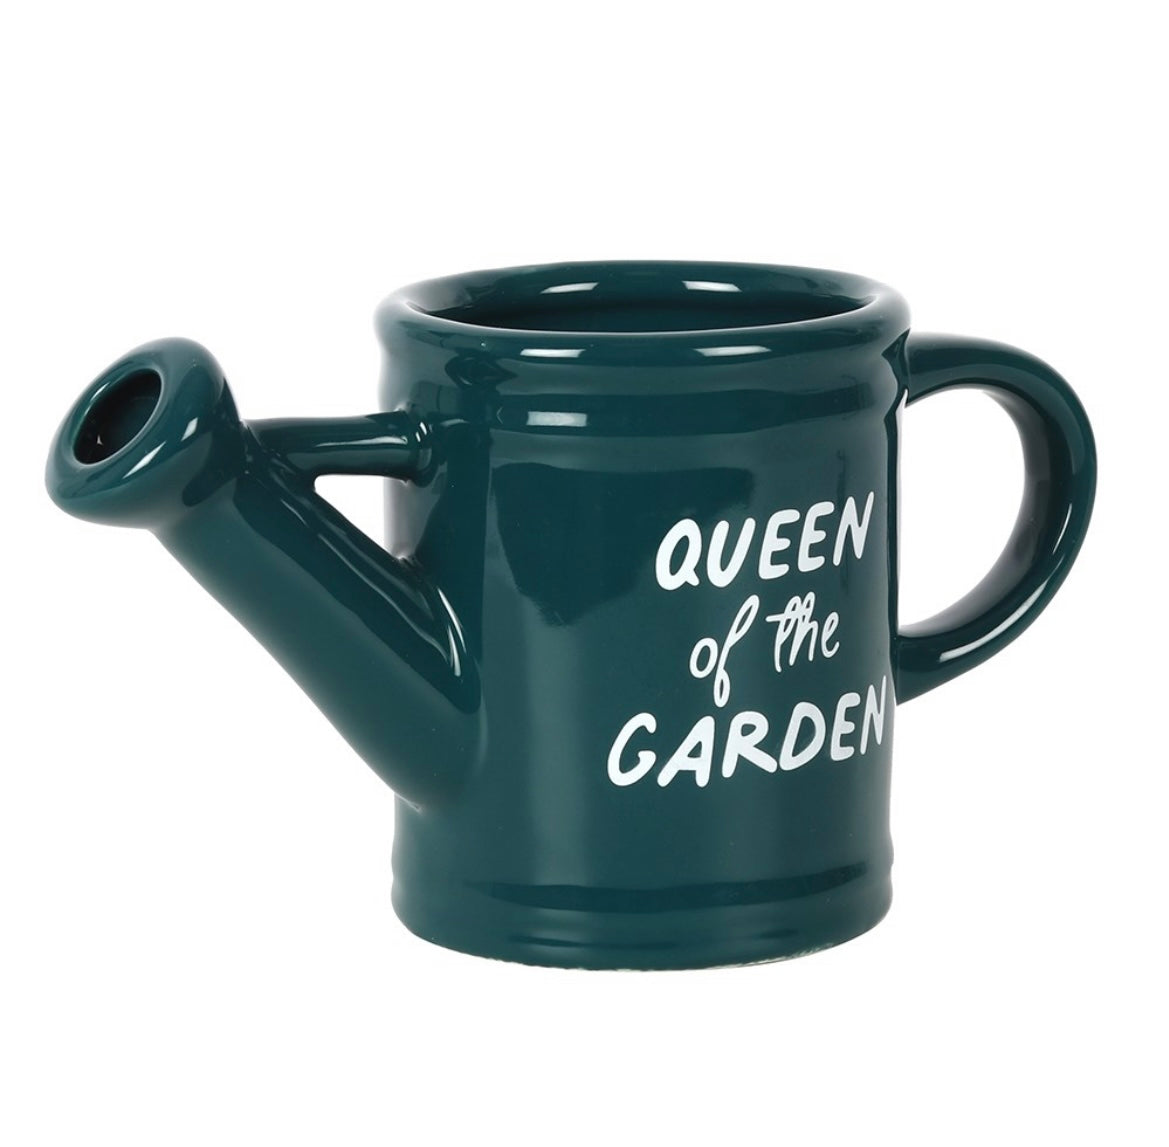 Queen of the garden watering can mug